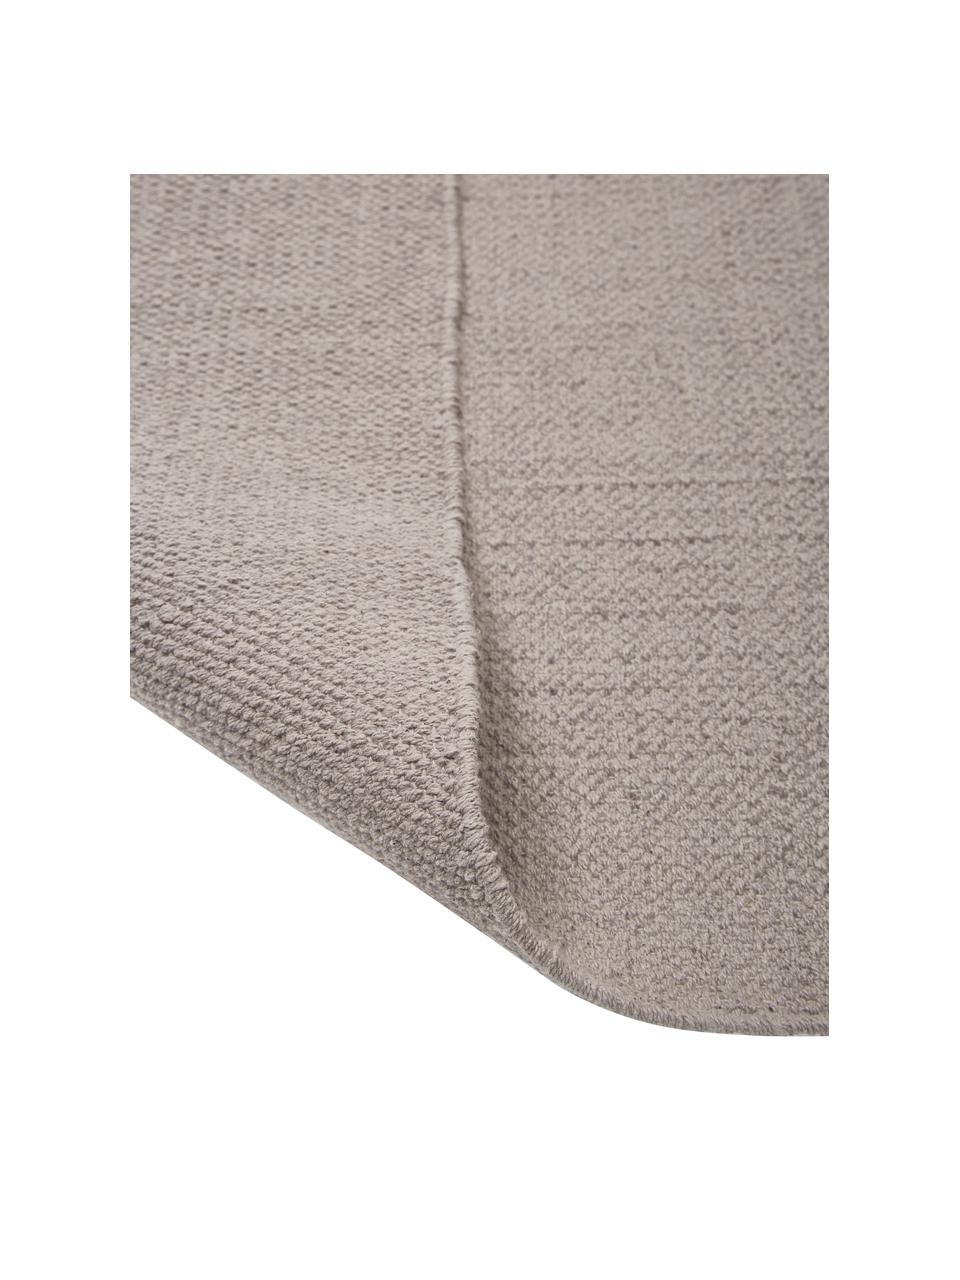 Dun  katoenen vloerkleed Agneta in grijs, handgeweven, 100% katoen, Grijs, B 120 x L 180 cm (maat S)